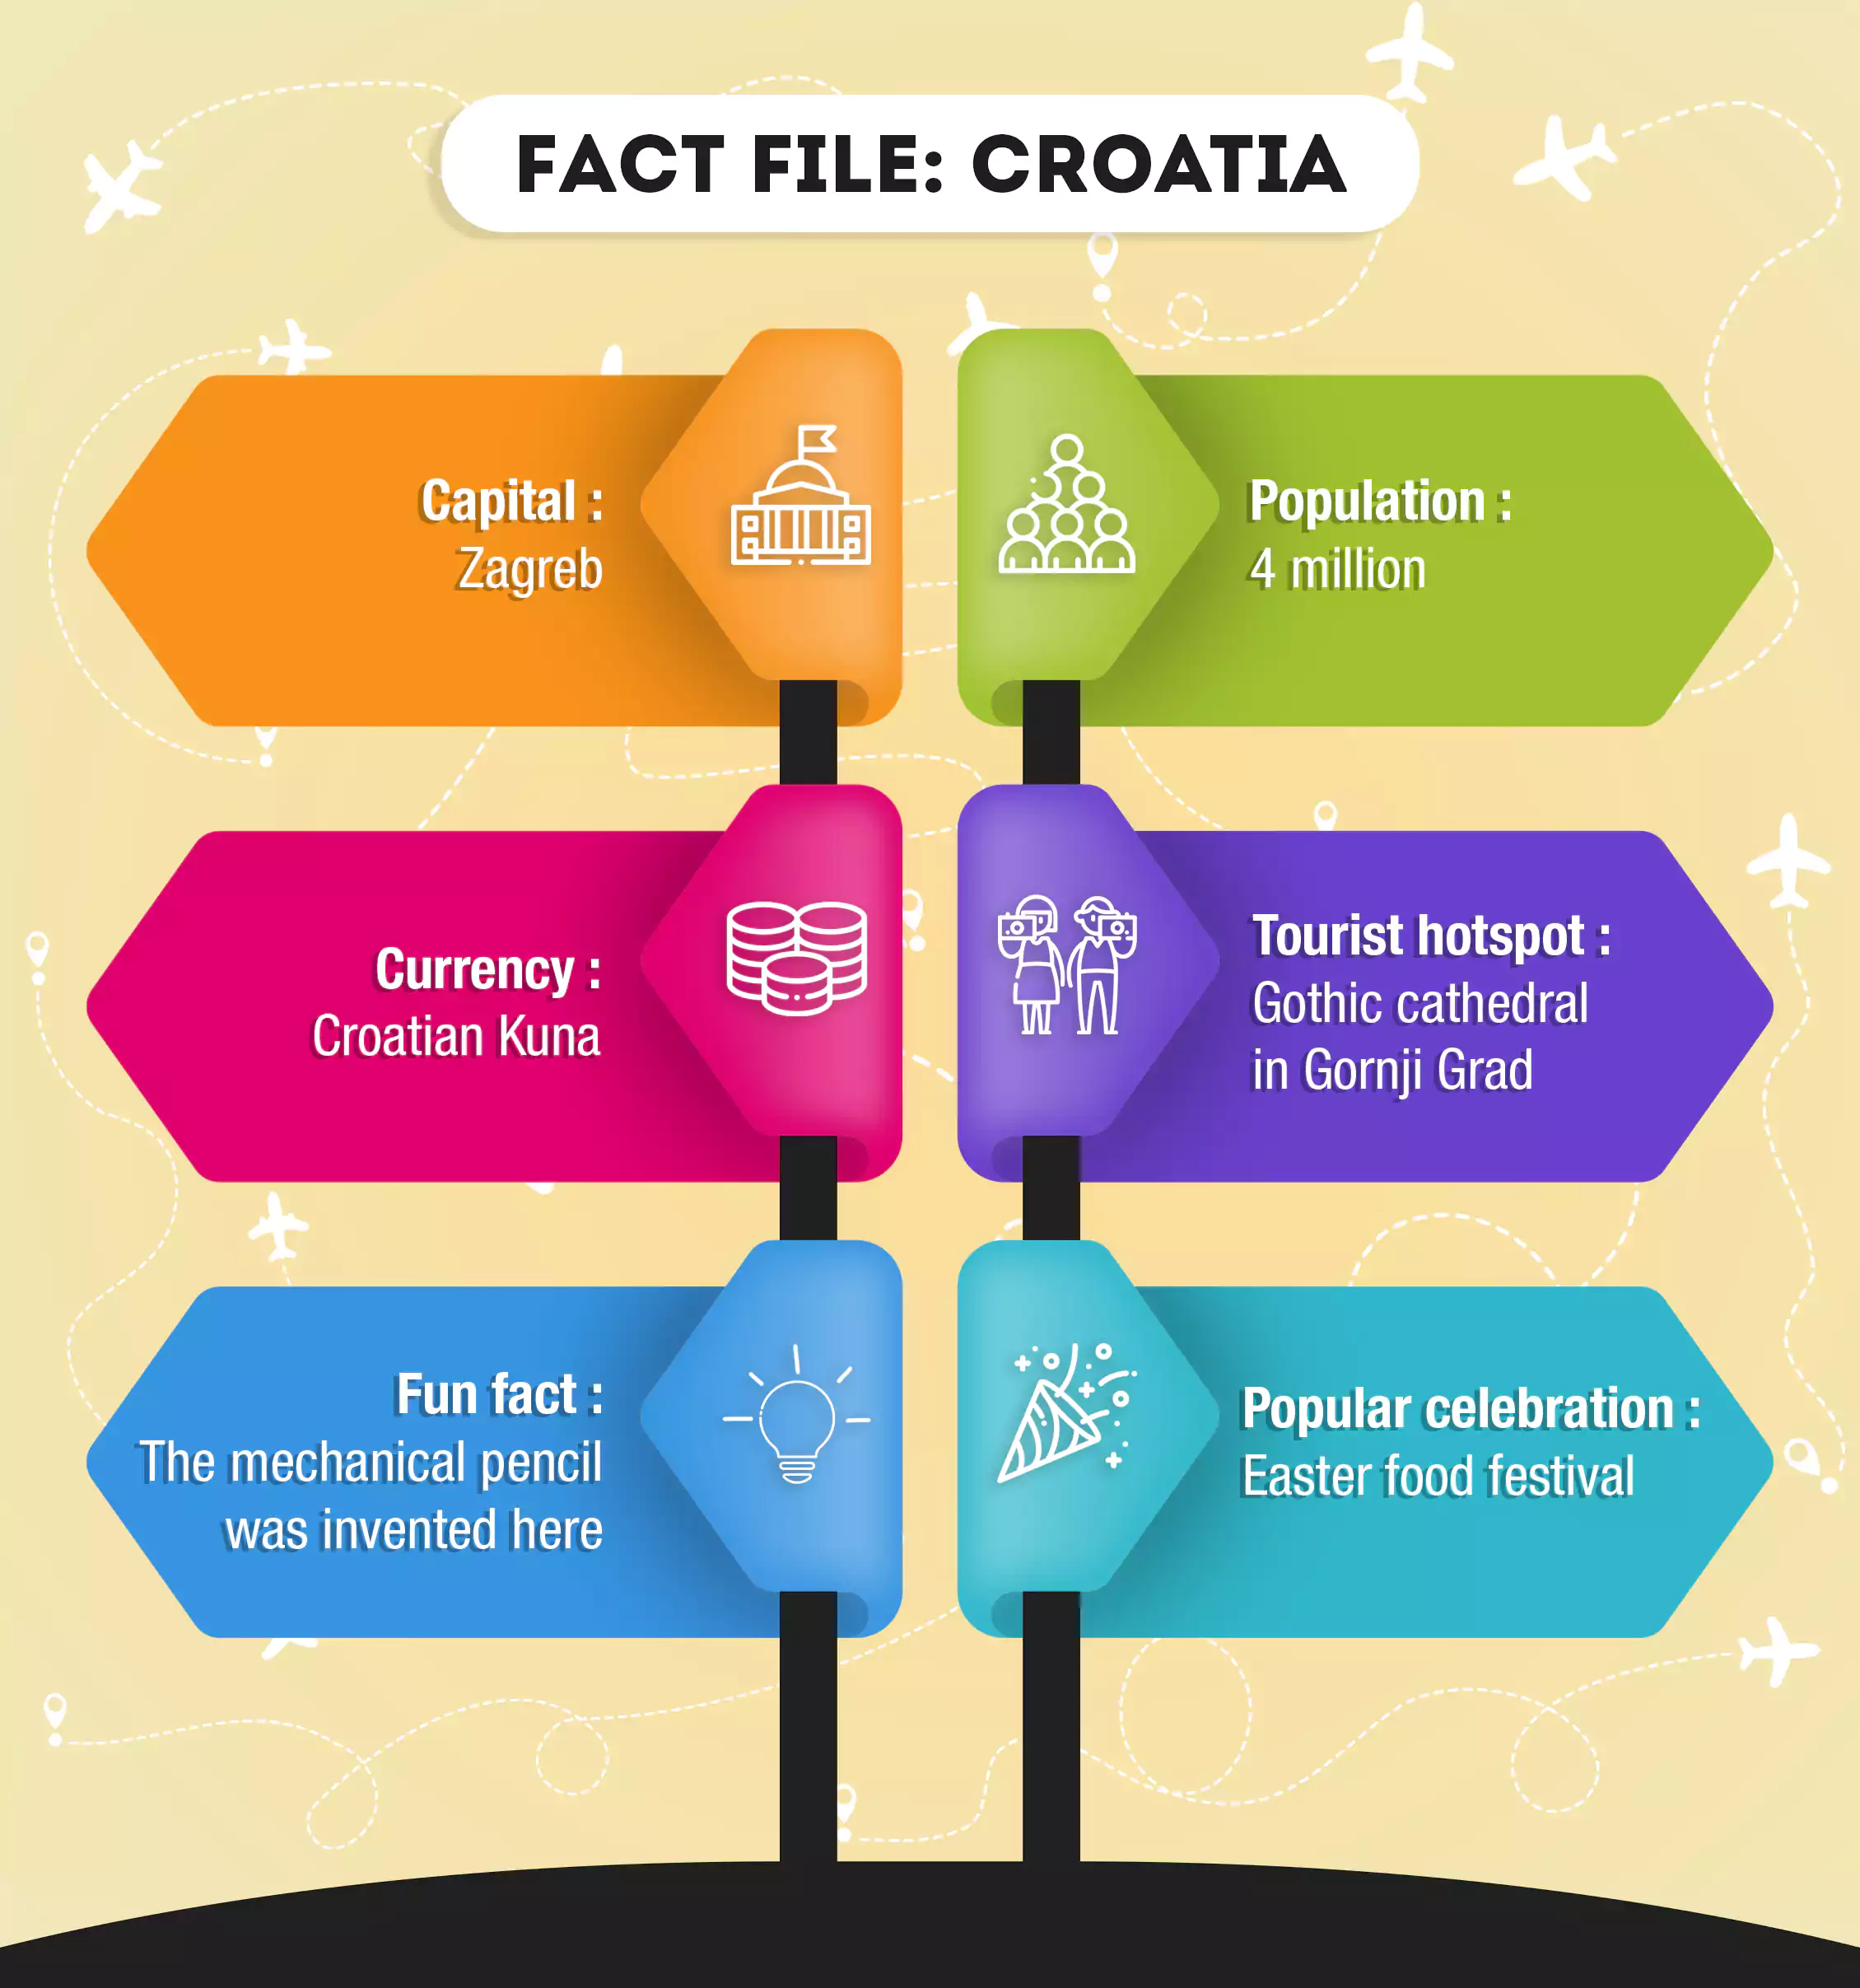 Fact file of Croatia